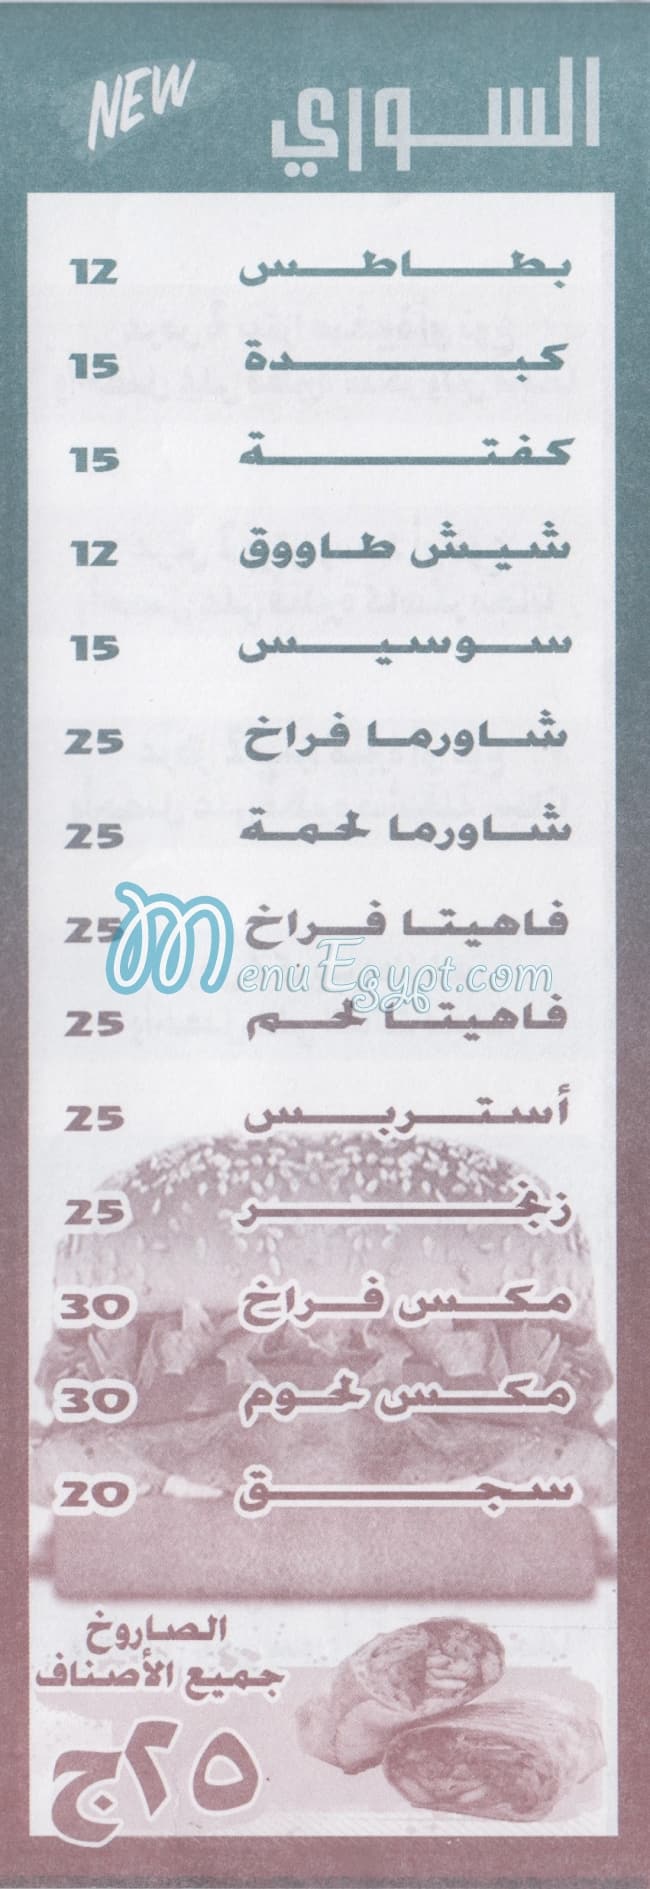 Zahra EL Salam menu Egypt 1